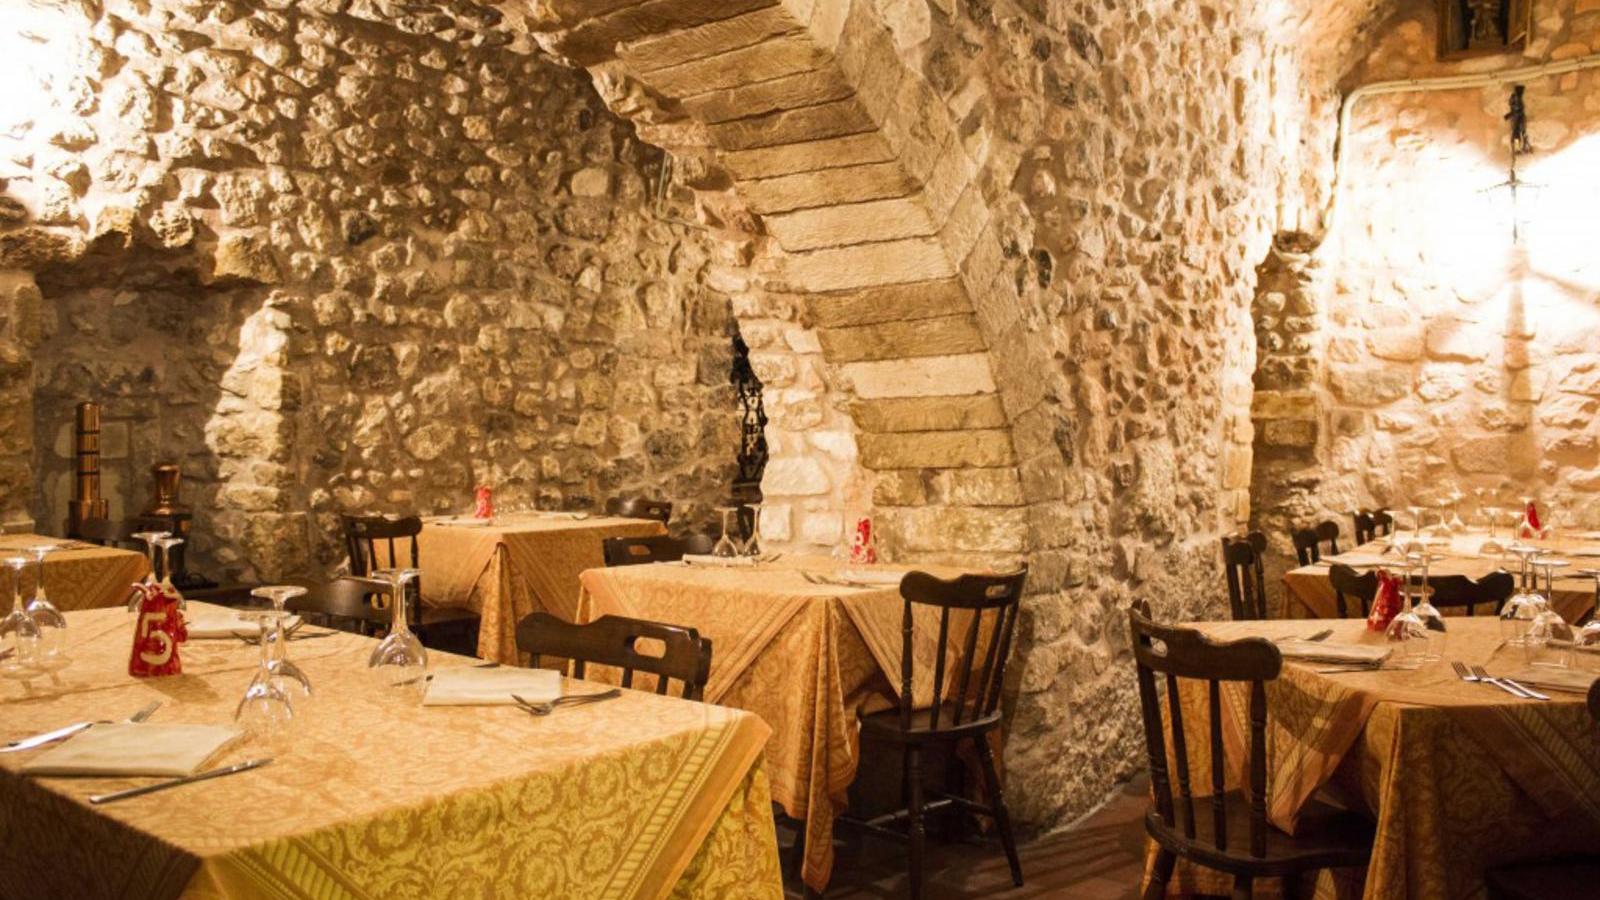 Miglior ristorante a Vieste - La Vecchia Vieste | Localtourism.it